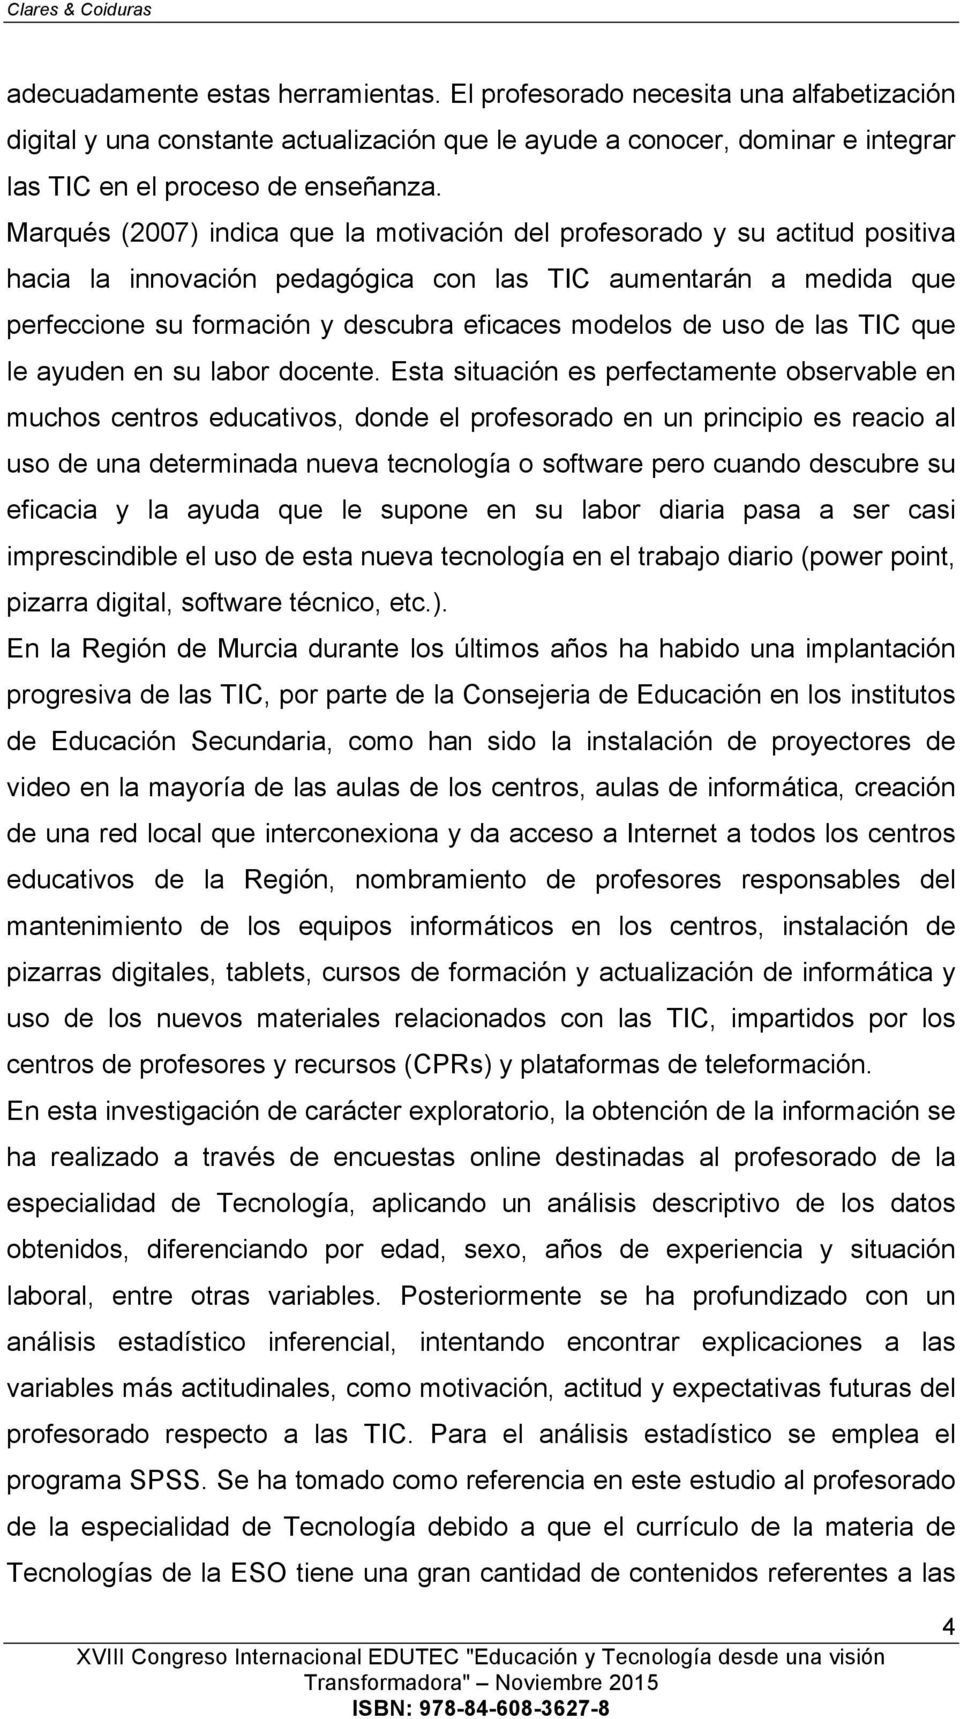 Marqués (2007) indica que la motivación del profesorado y su actitud positiva hacia la innovación pedagógica con las TIC aumentarán a medida que perfeccione su formación y descubra eficaces modelos